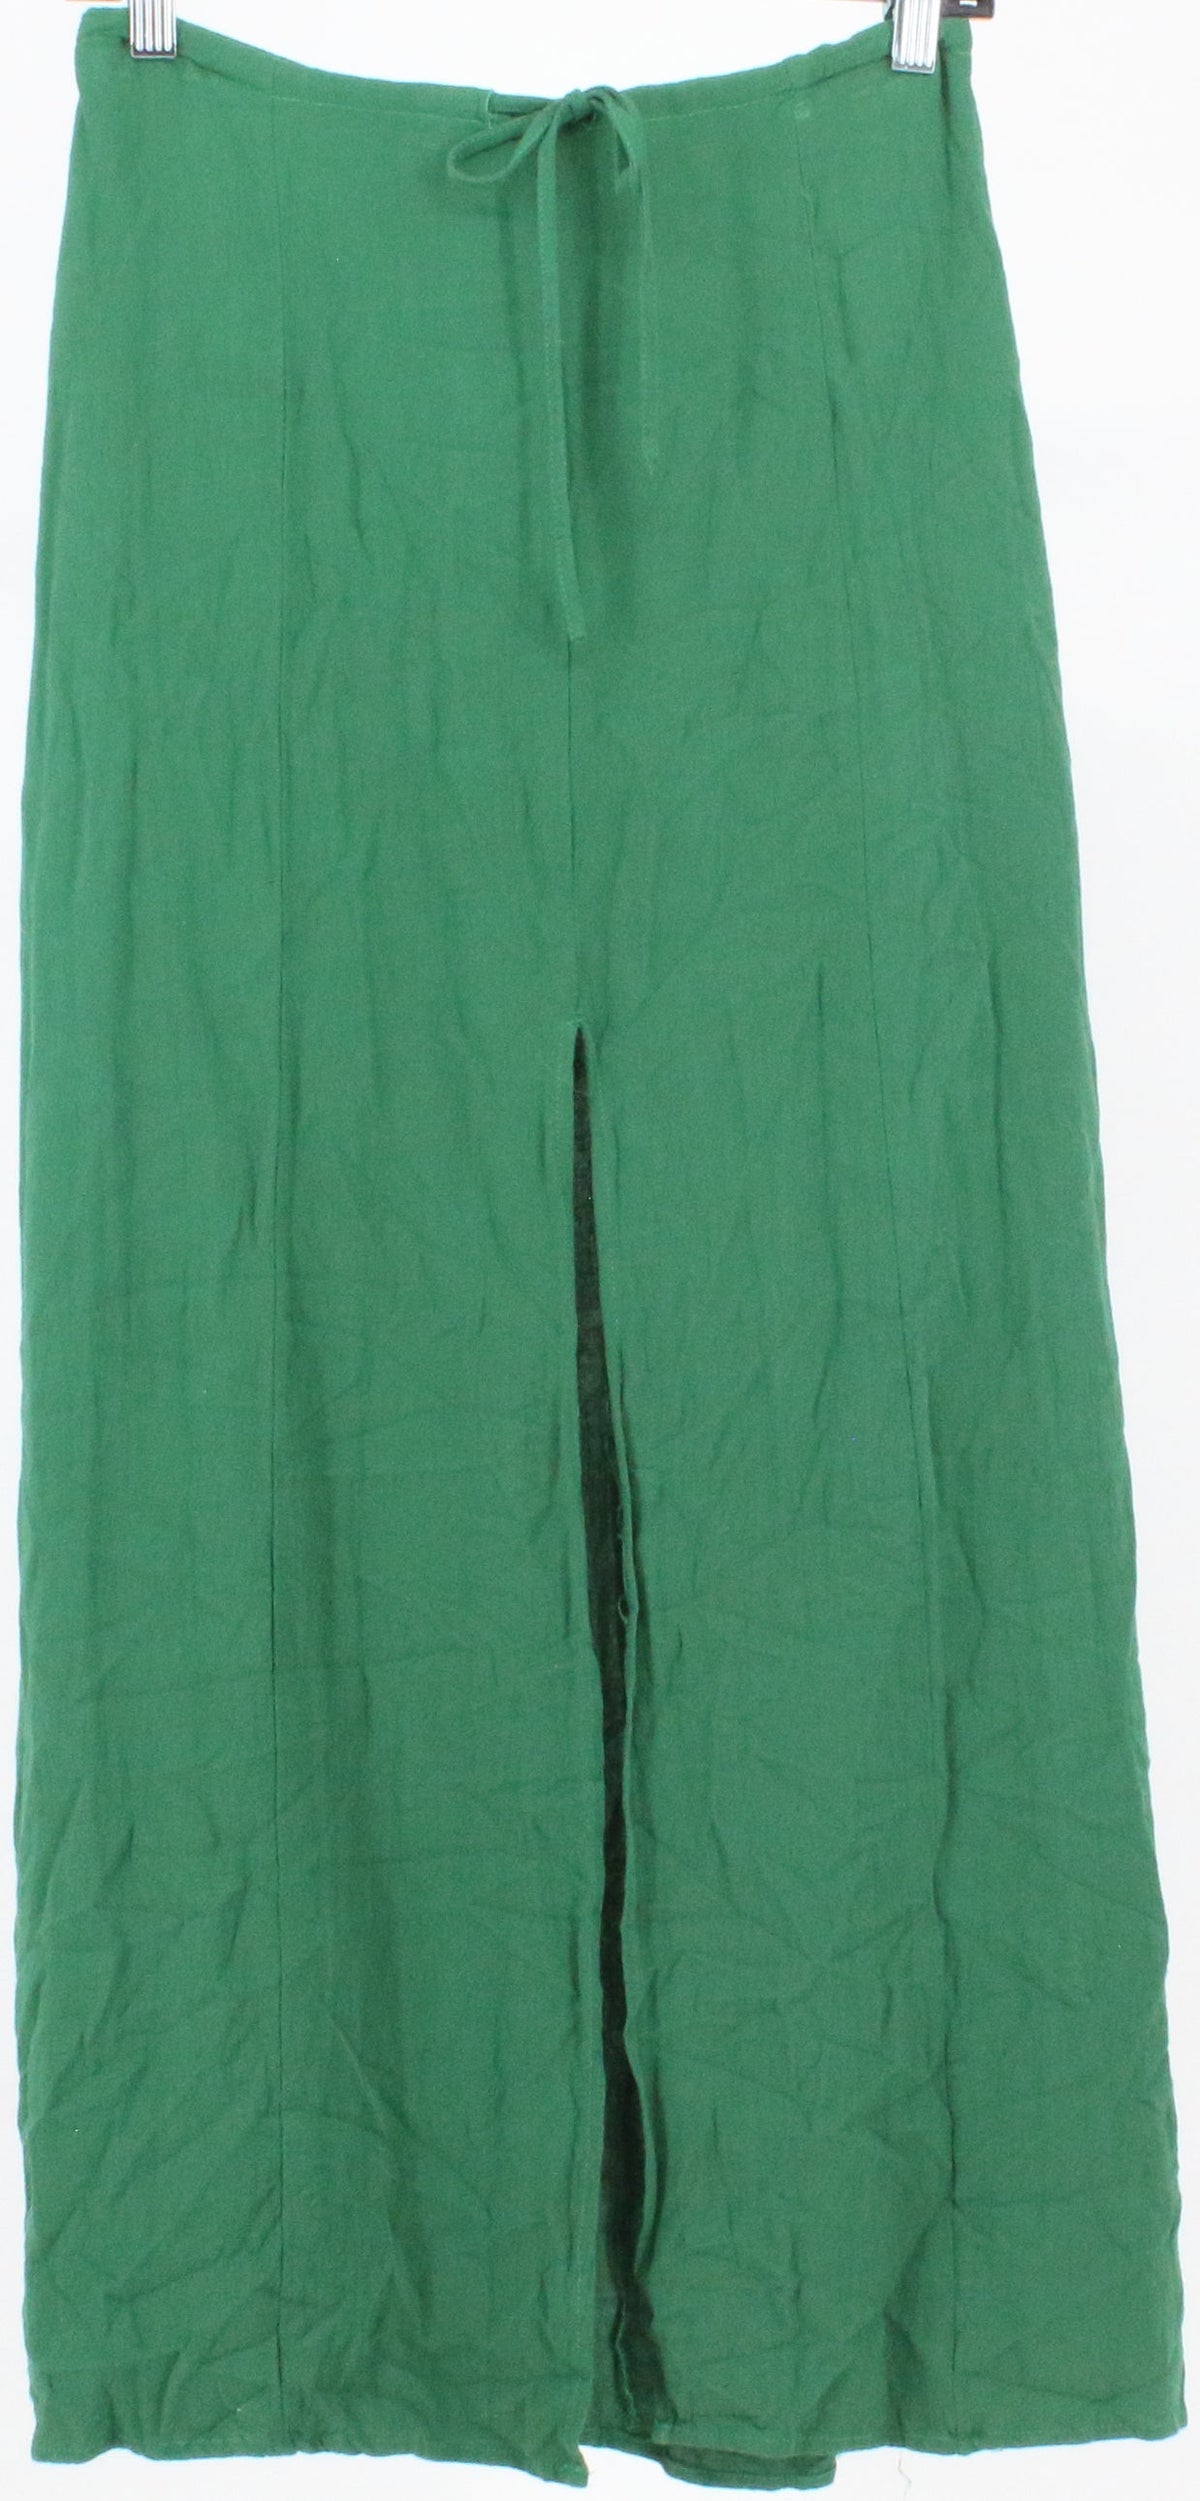 Honey Belle Green Long Skirt